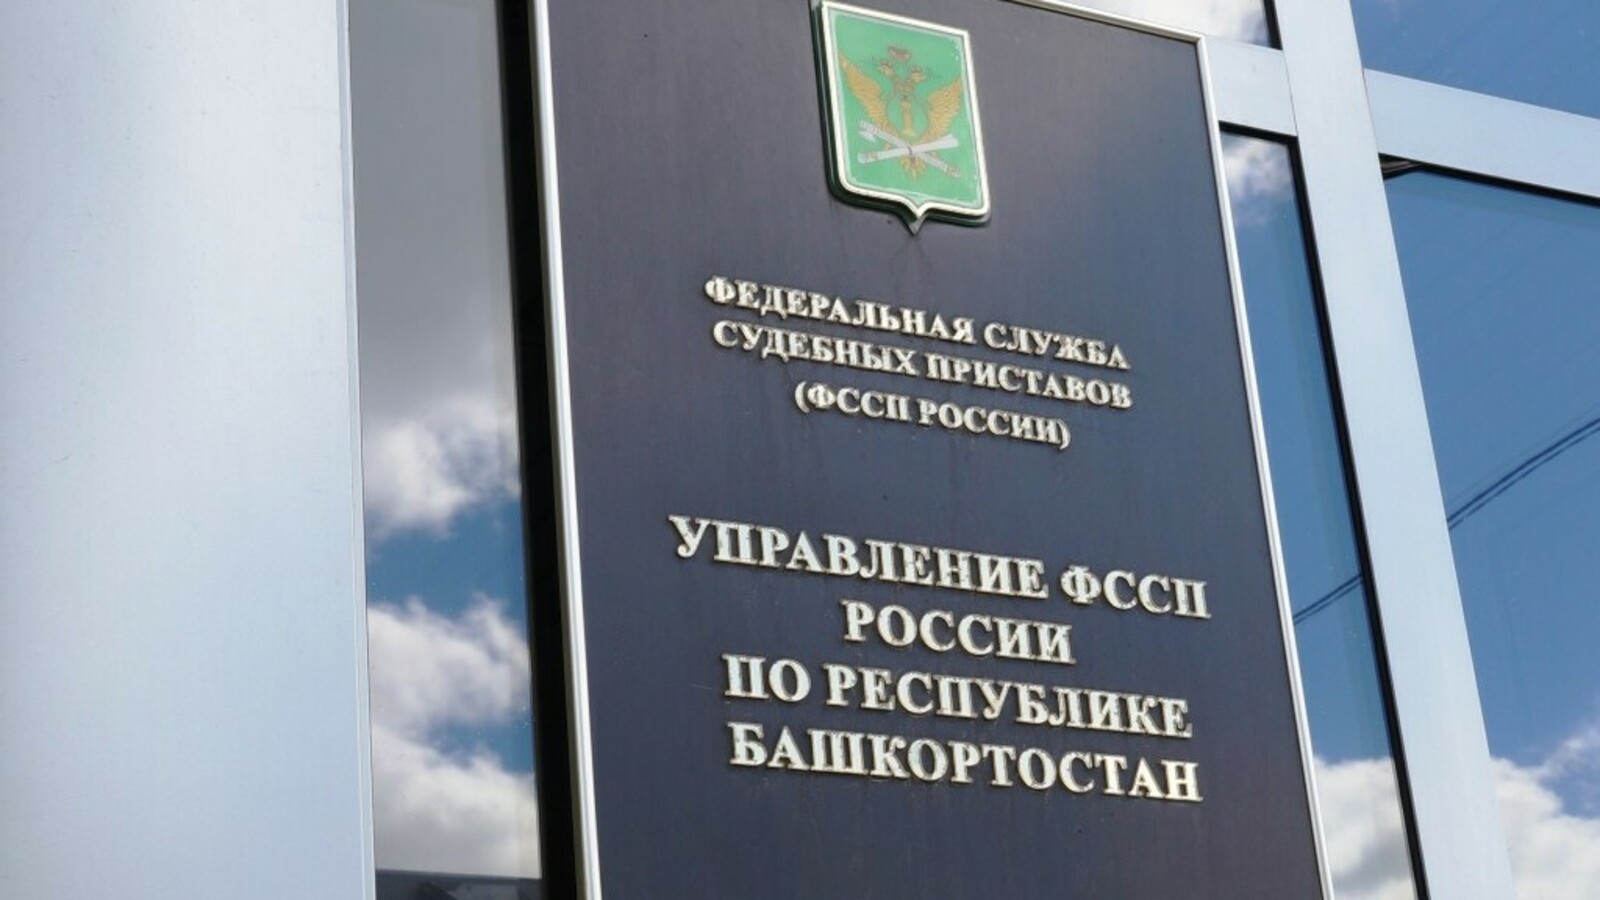 Управление ФССП по Республике Башкортостан разъясняет